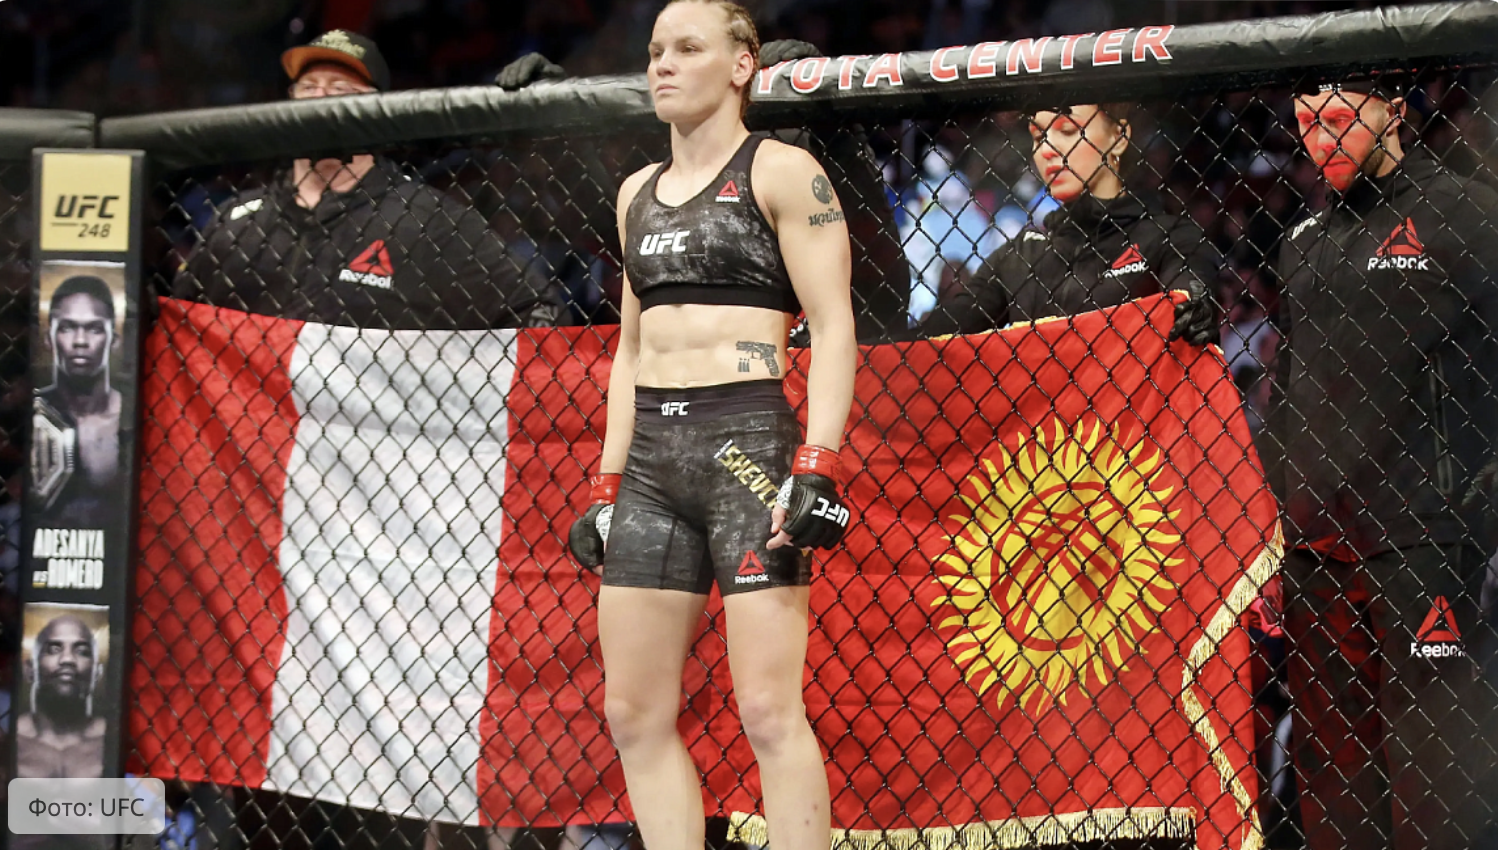 La campeona rusa de la UFC actúa para Perú. El insólito destino de Valentina Shevchenko